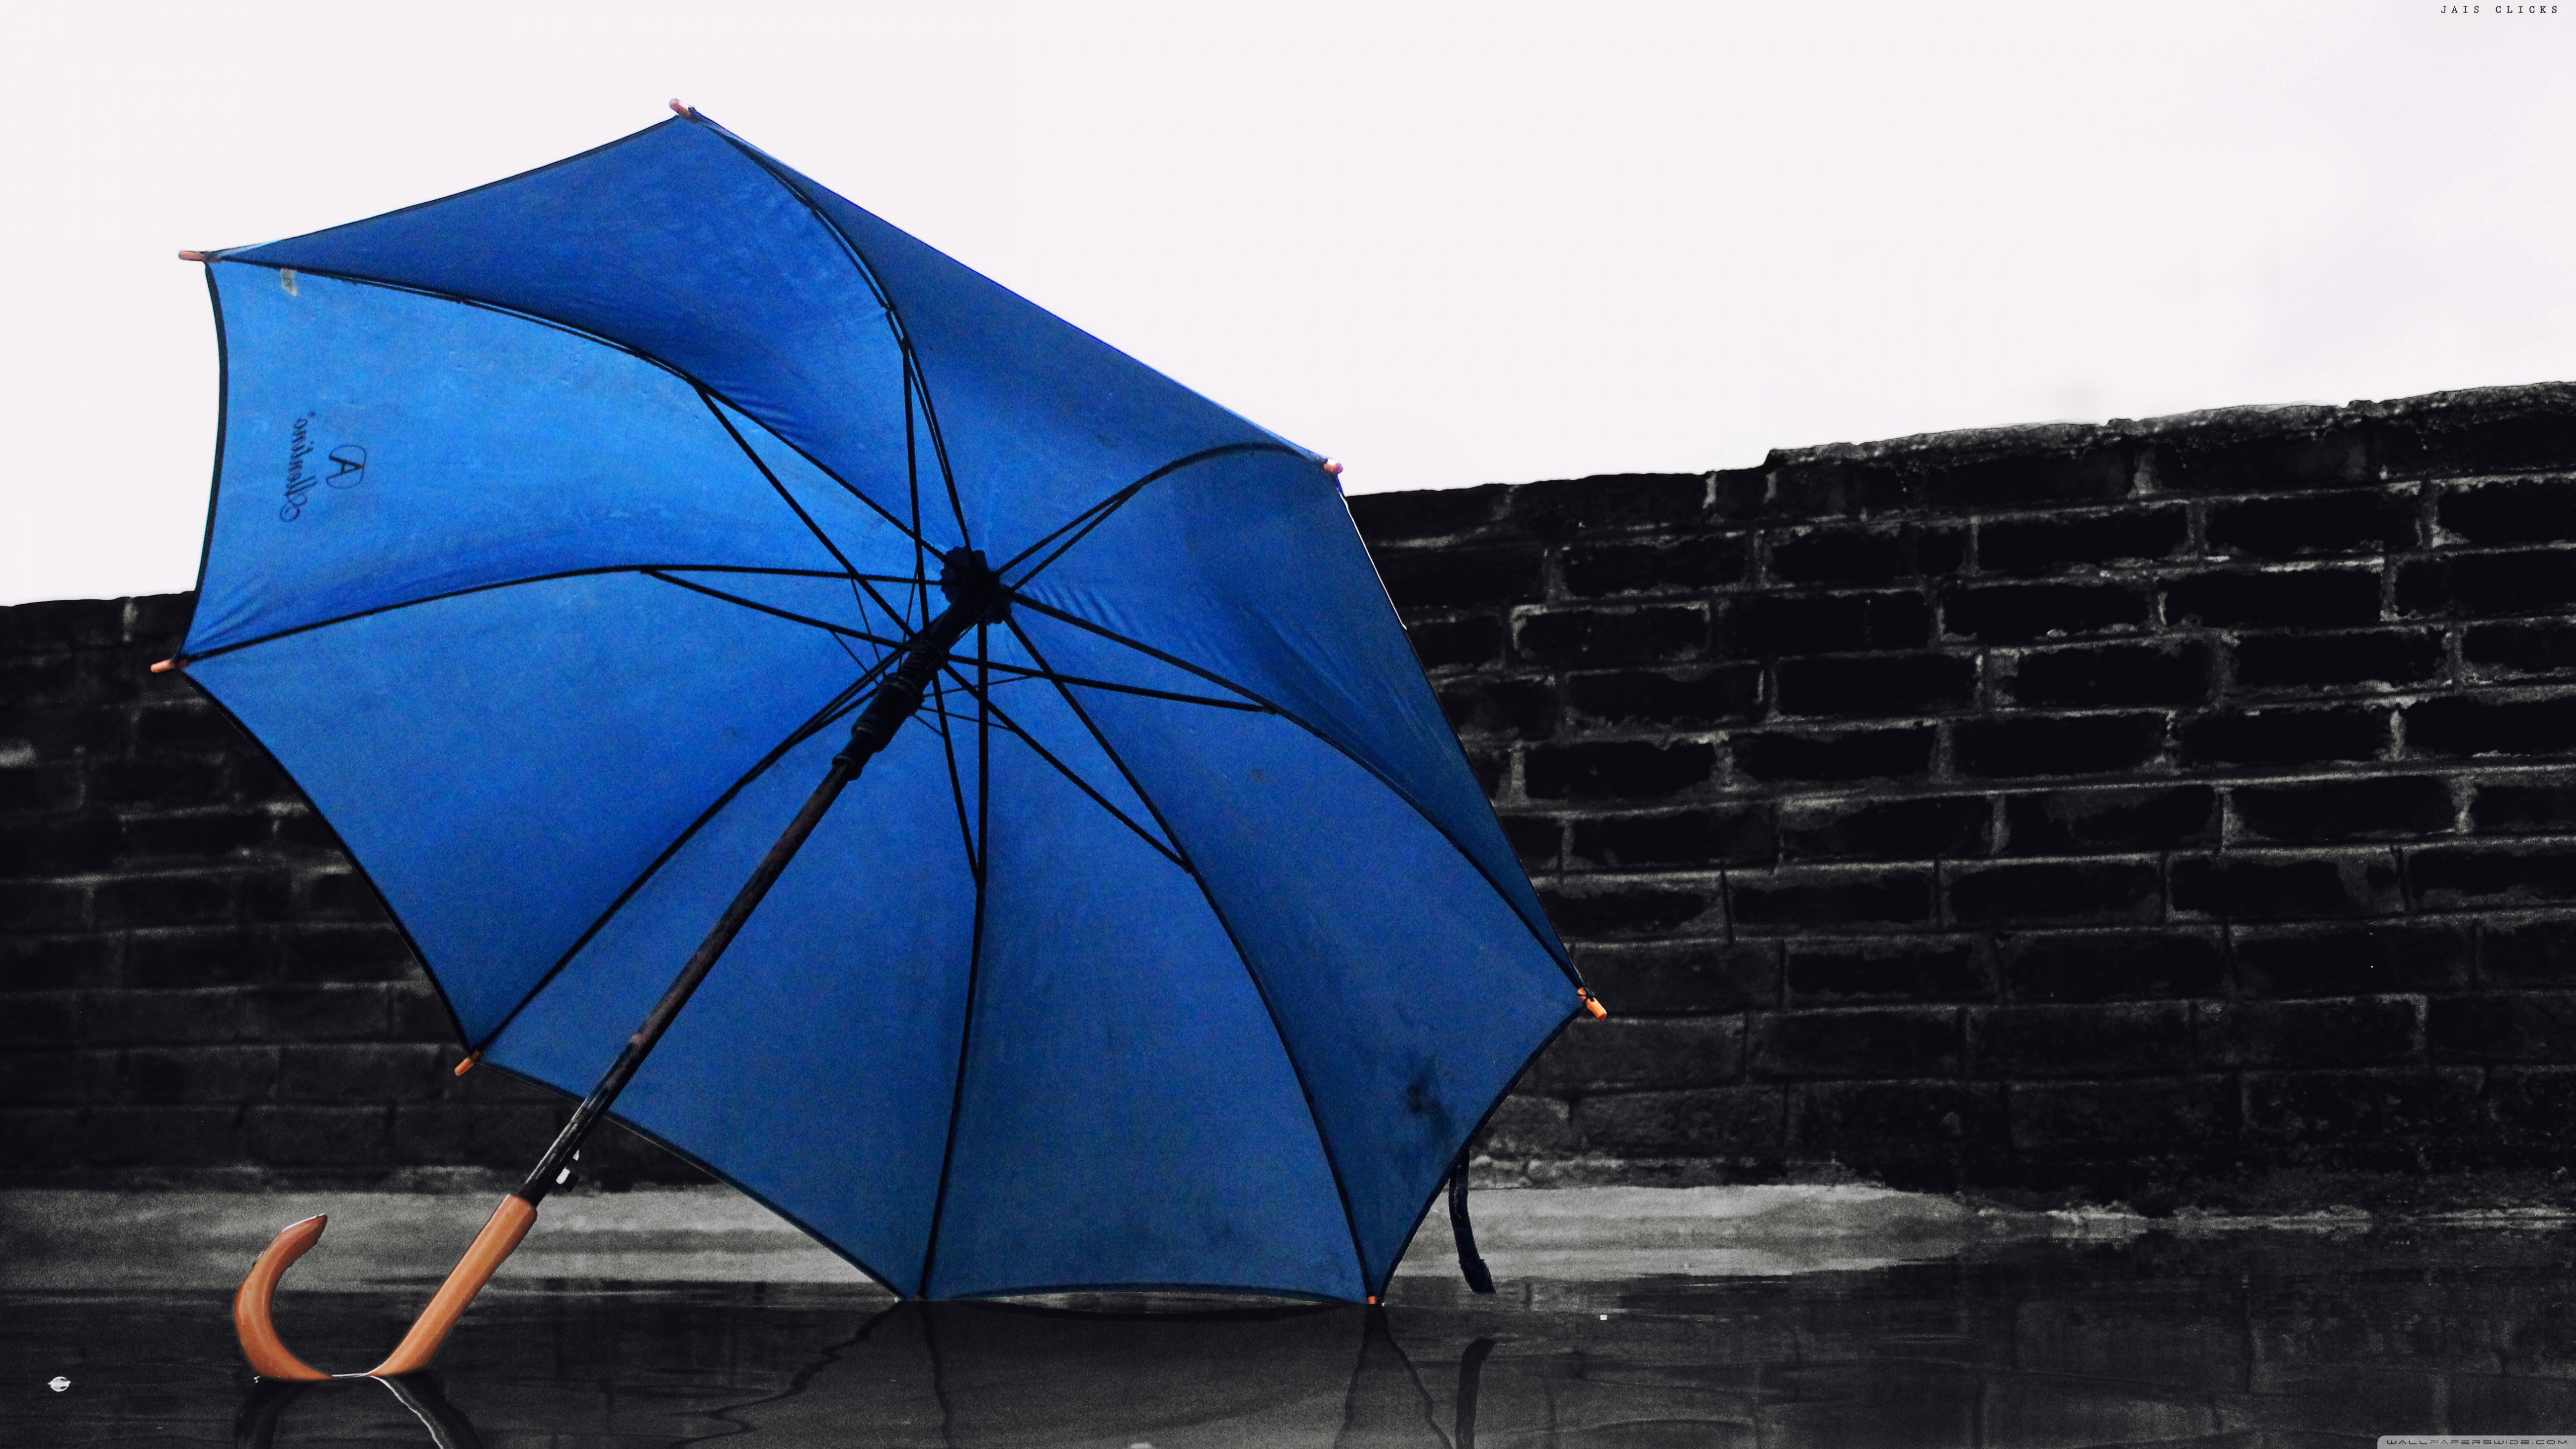 Одолжил ей зонтик. Зонтик. Зонт черный. Зонт синий. Красивые зонтики.